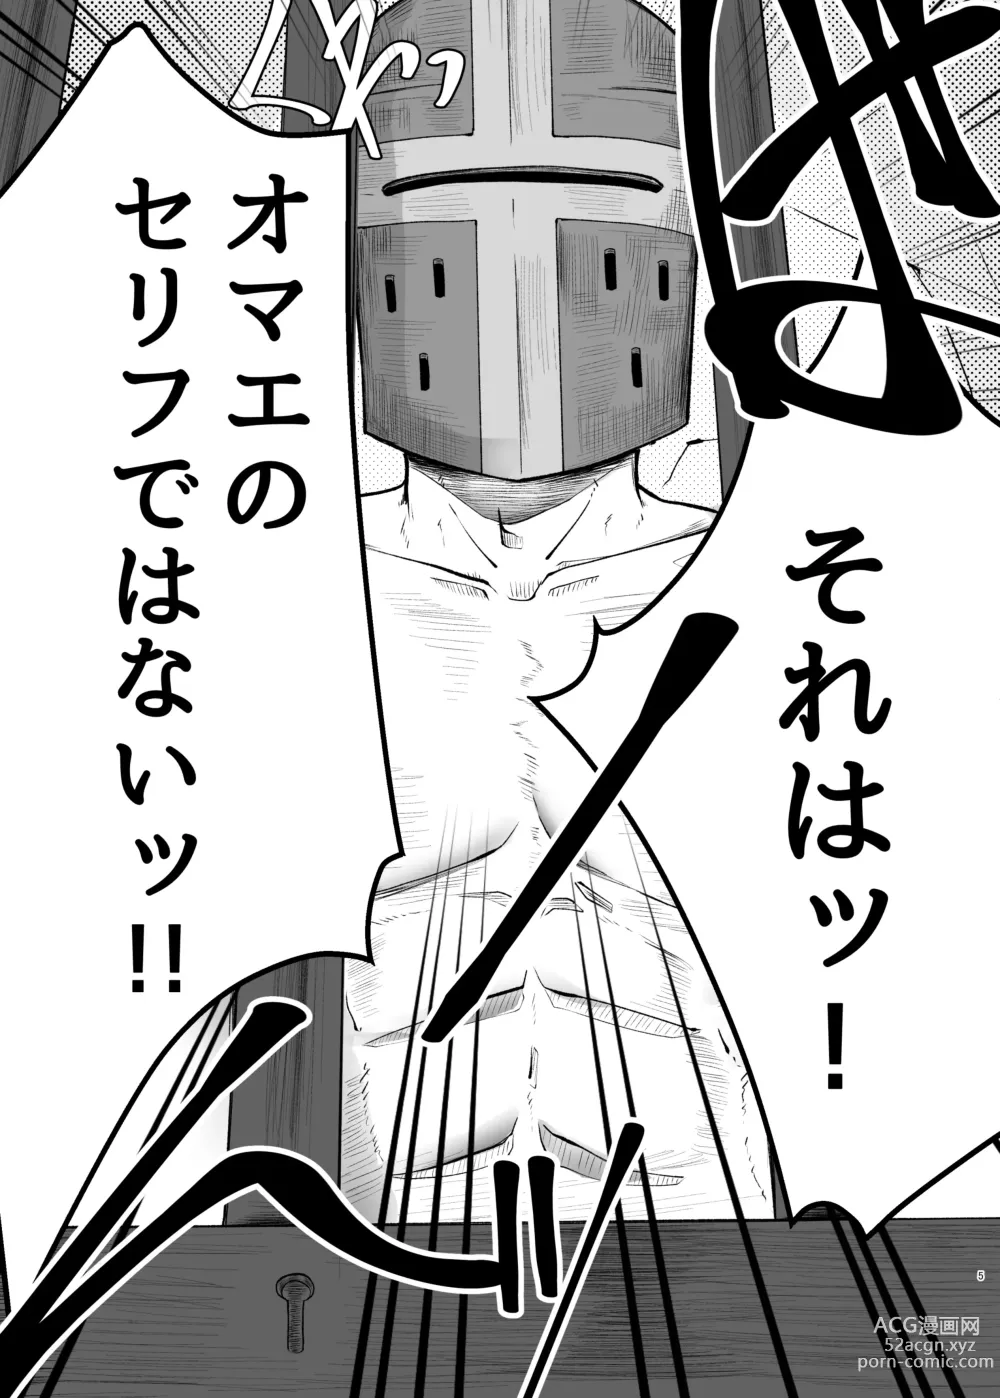 Page 5 of doujinshi Kukkoro kara hajimaru kemoero manga